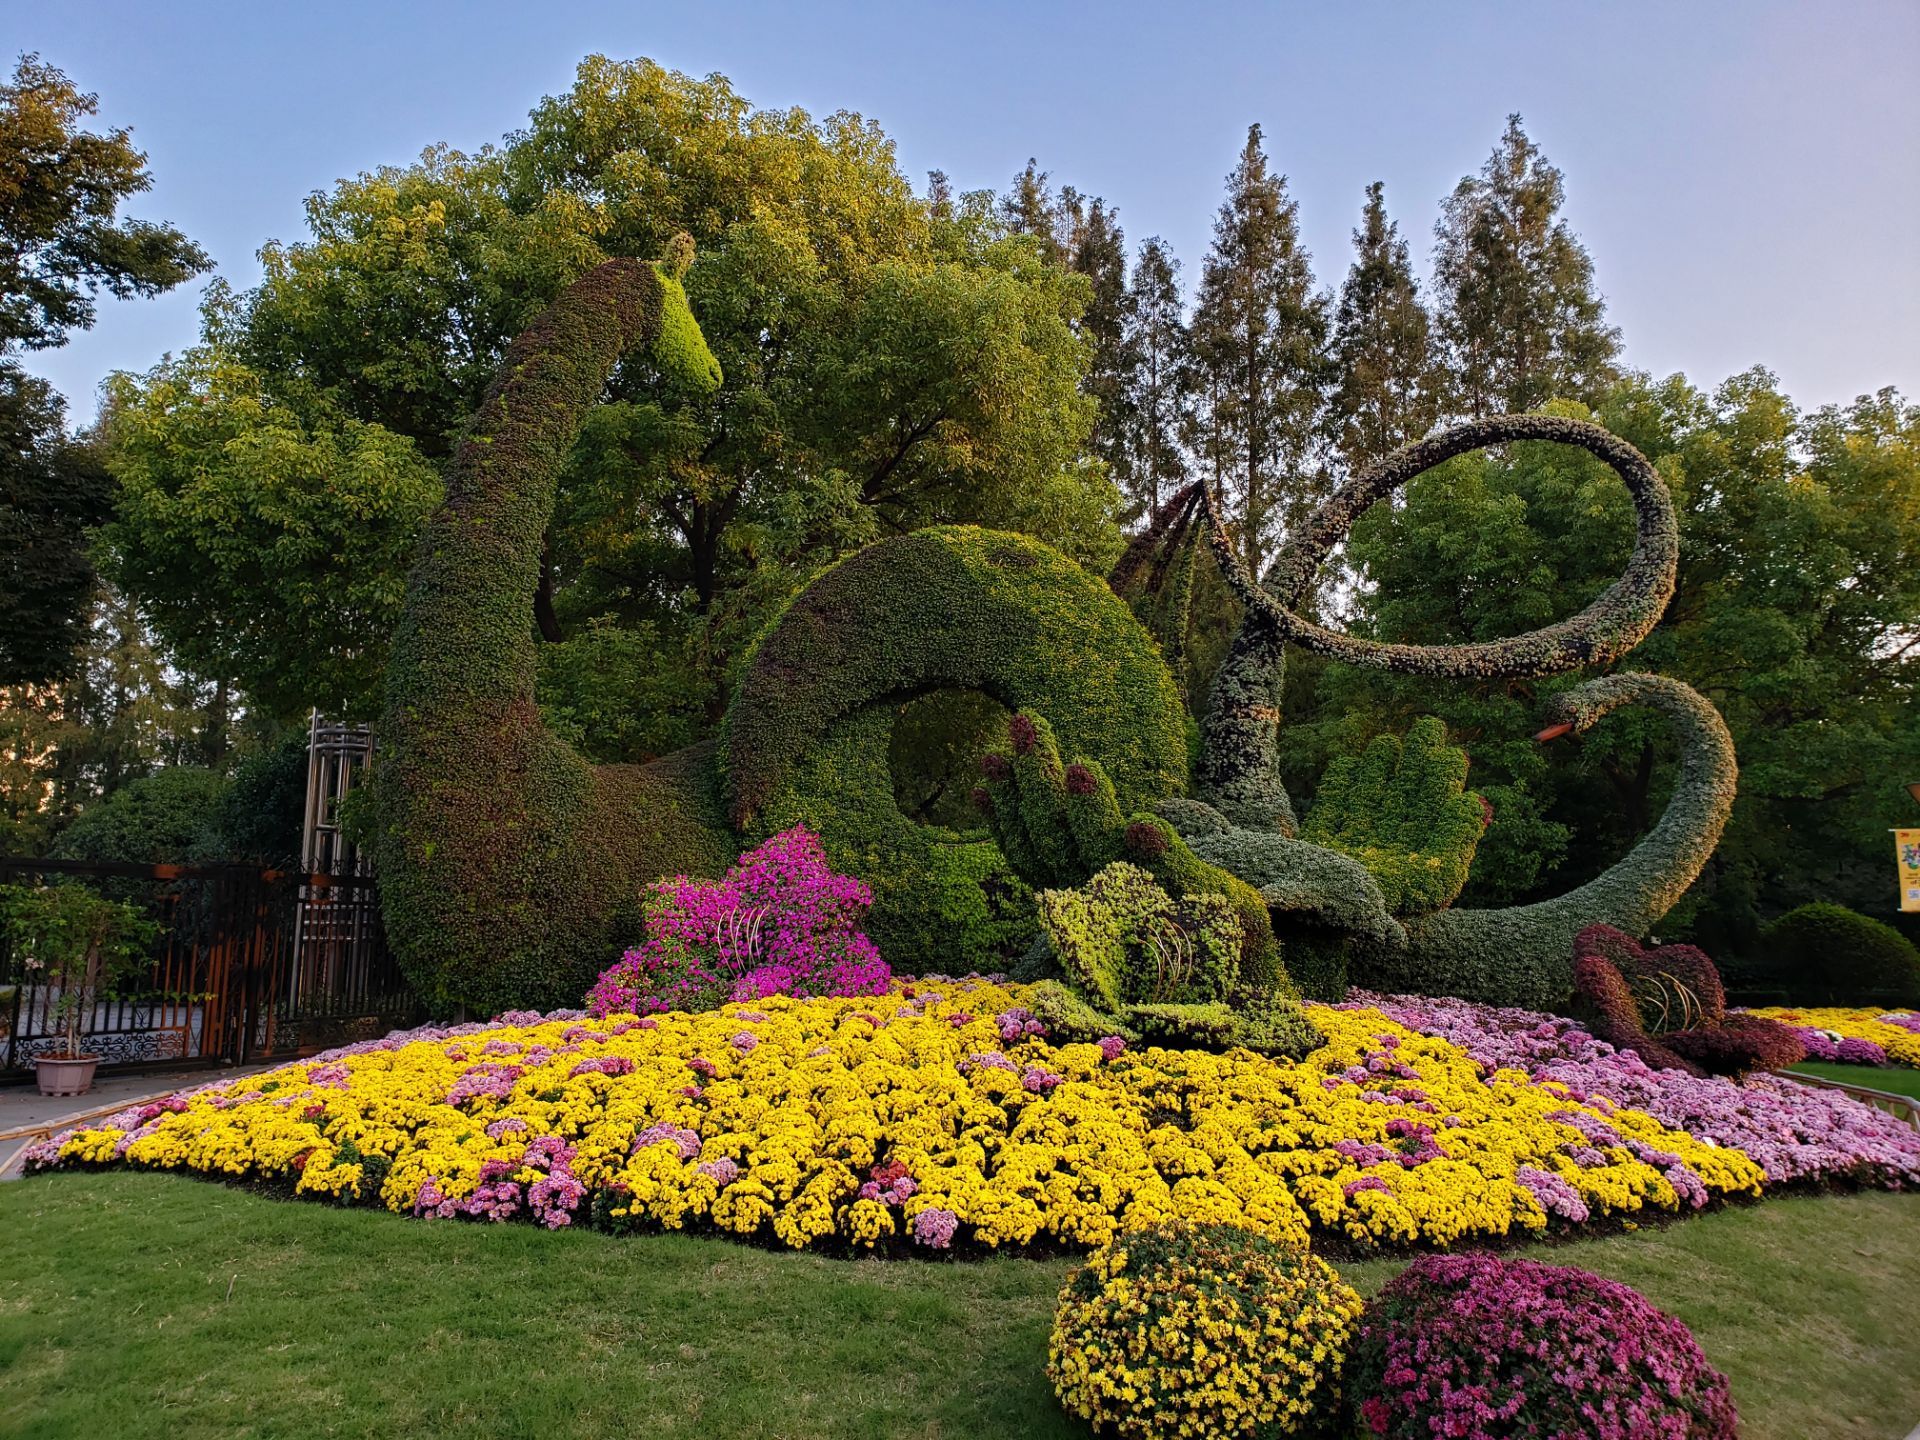 不能错过的秋季花展，2019上海植物园让你“心花怒放” - BANG!